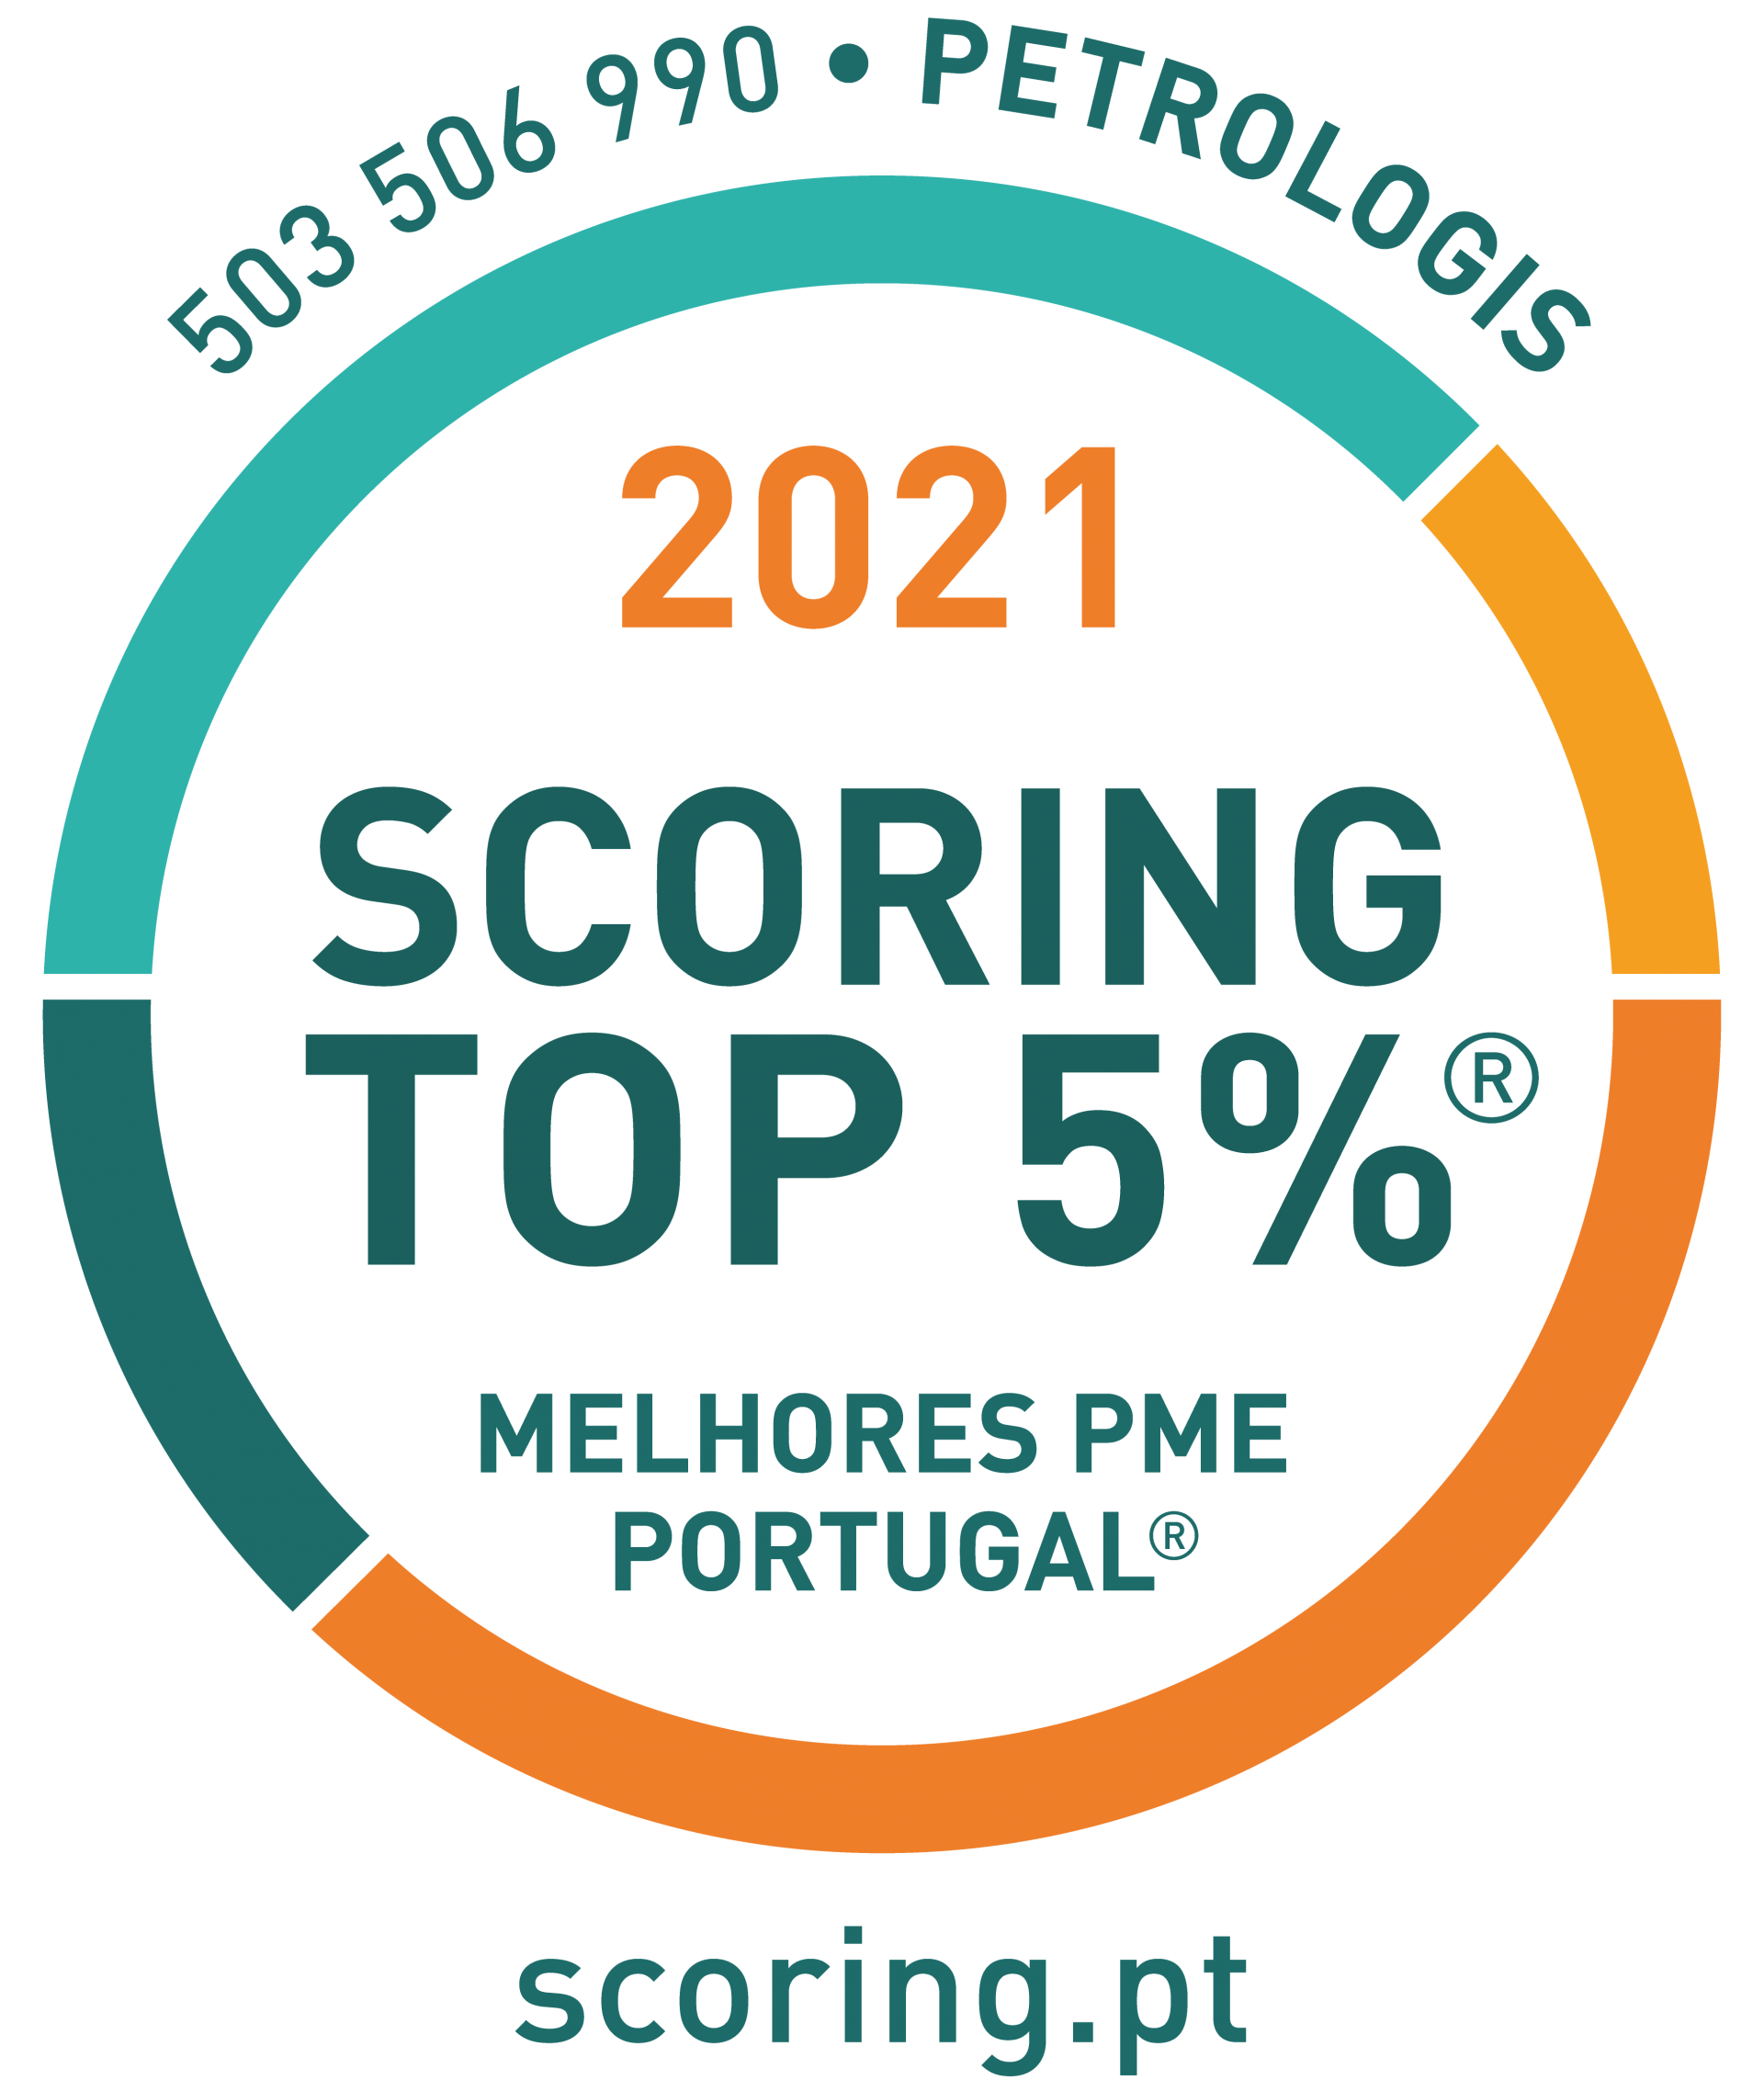 PETROLOGIS CERTIFICADA COMO TOP 5% MELHORES PME PORTUGAL